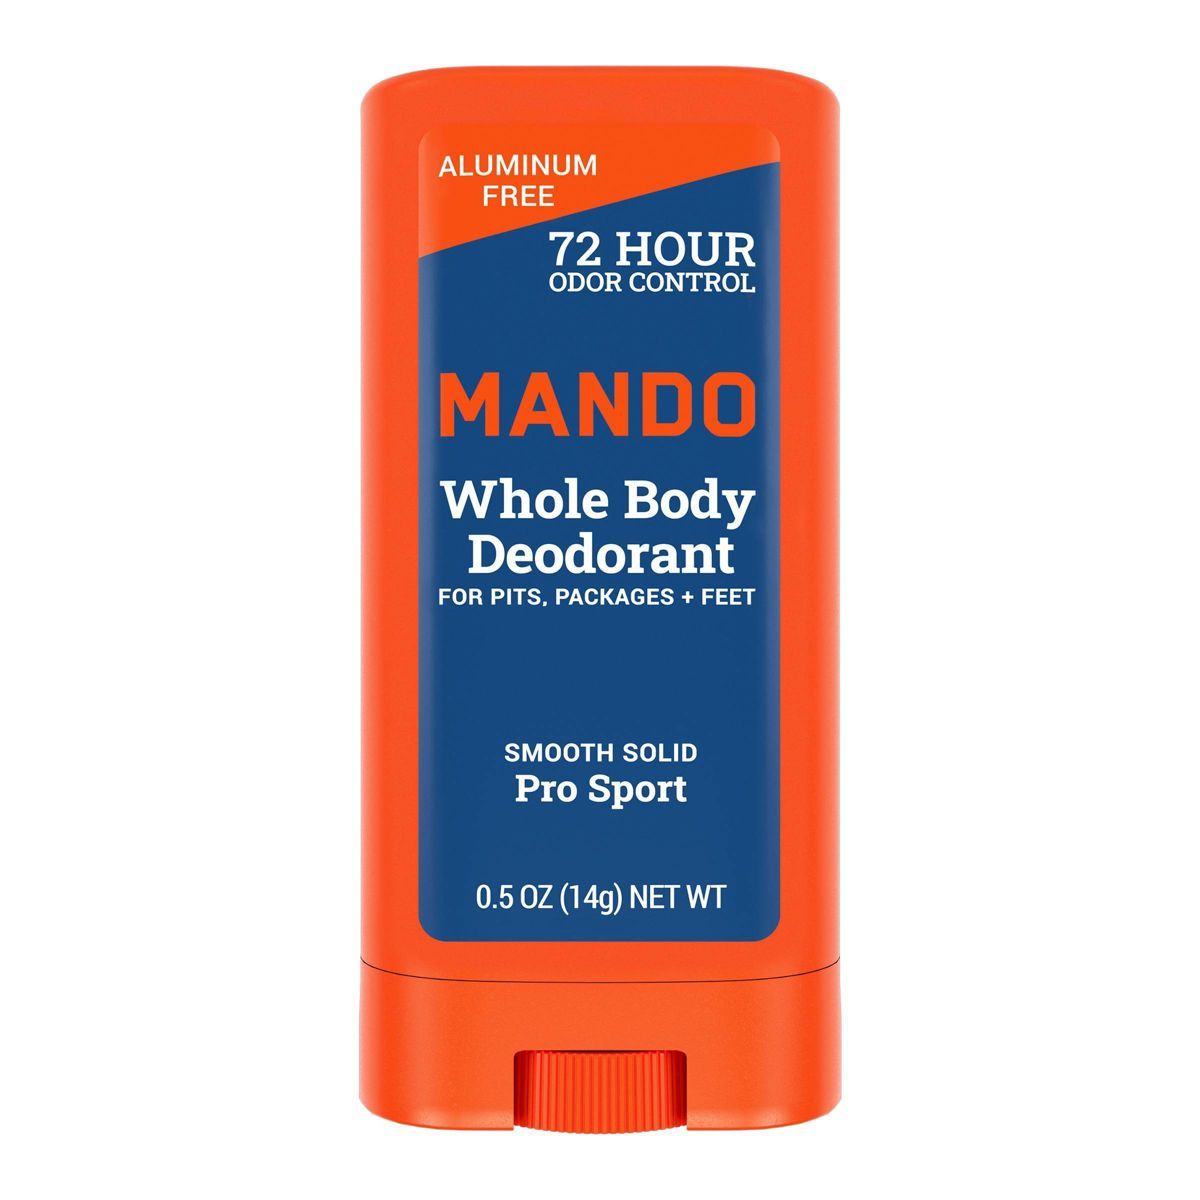 Mando Whole Body Deodorant - Men’s Aluminum-Free Smooth Solid Stick Deodorant - Pro Sport - Tri... | Target